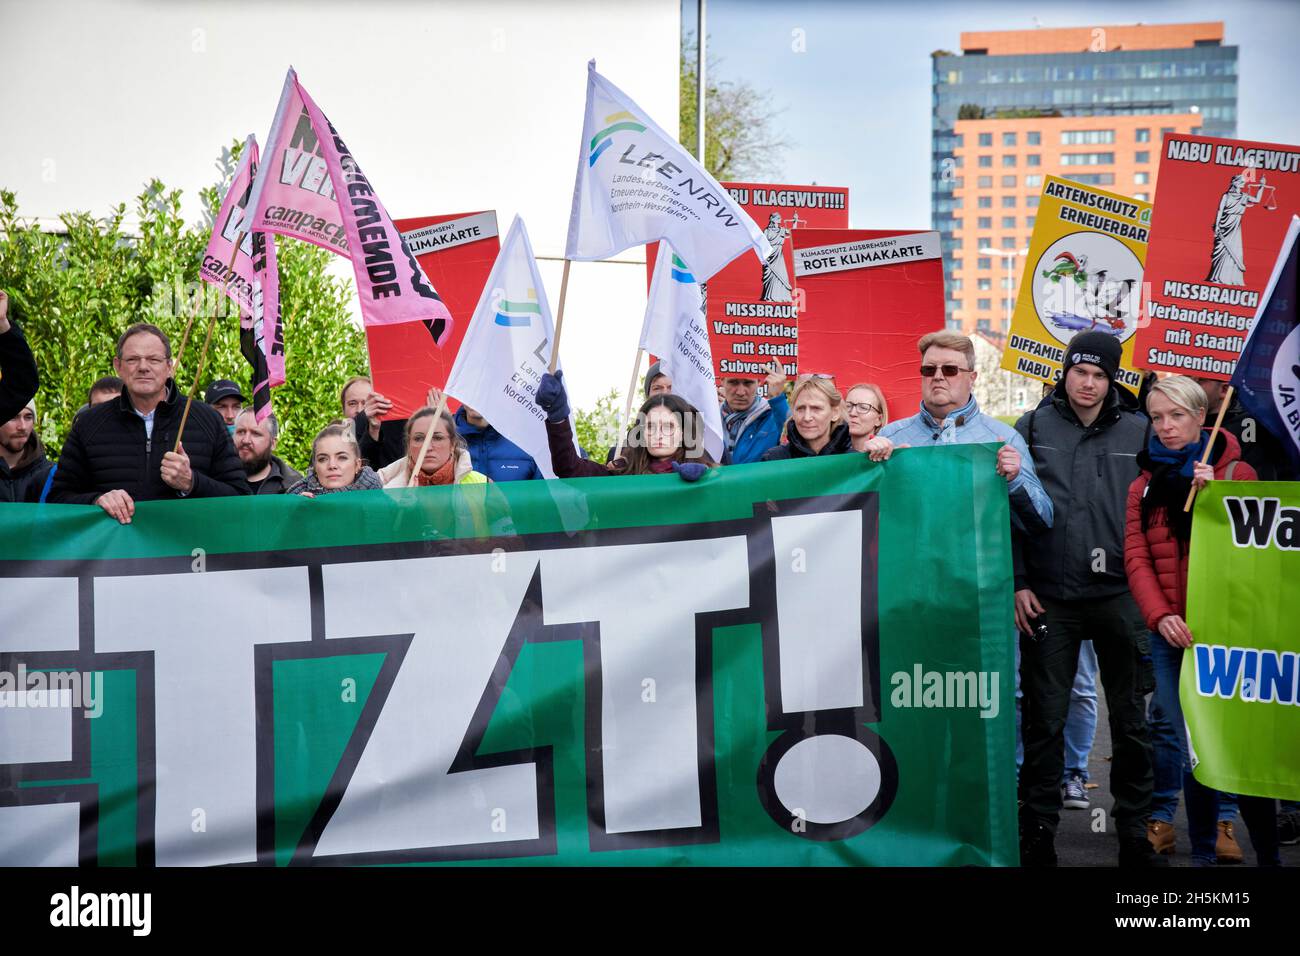 Der Landesverband Erneuerbare Energien NRW demonstriert gegen die, aus ihren Augen, Klagewelle gegen Windkraftalagen des NABU-NRW. Foto Stock